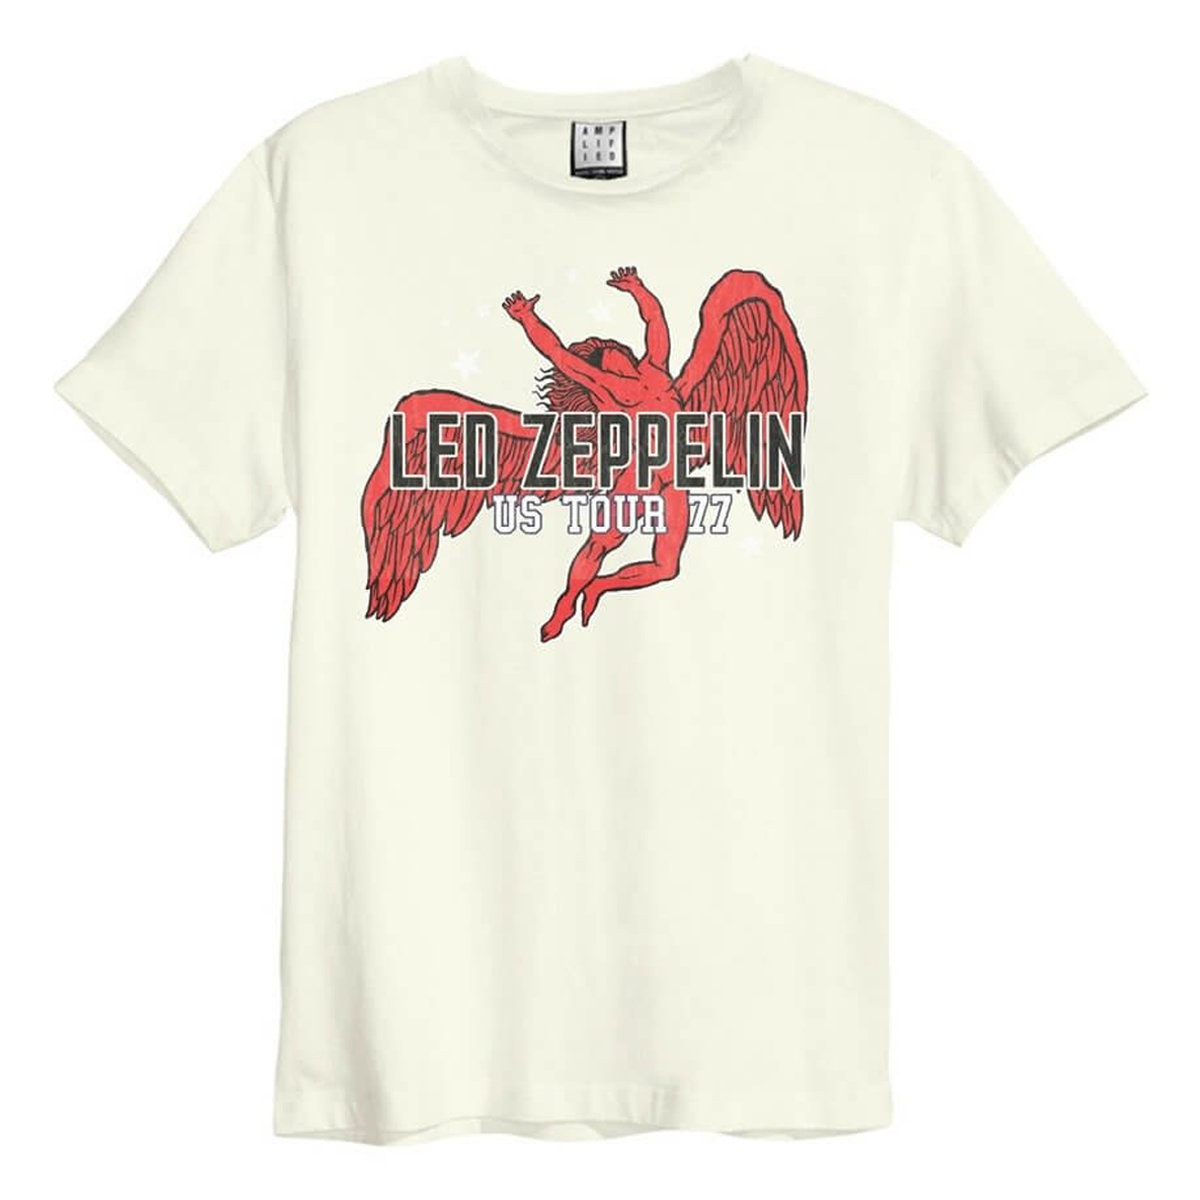 Logotipo oficial de Led Zeppelin Hoth Unisex T-shirt new con licencia Merch US Tour 77